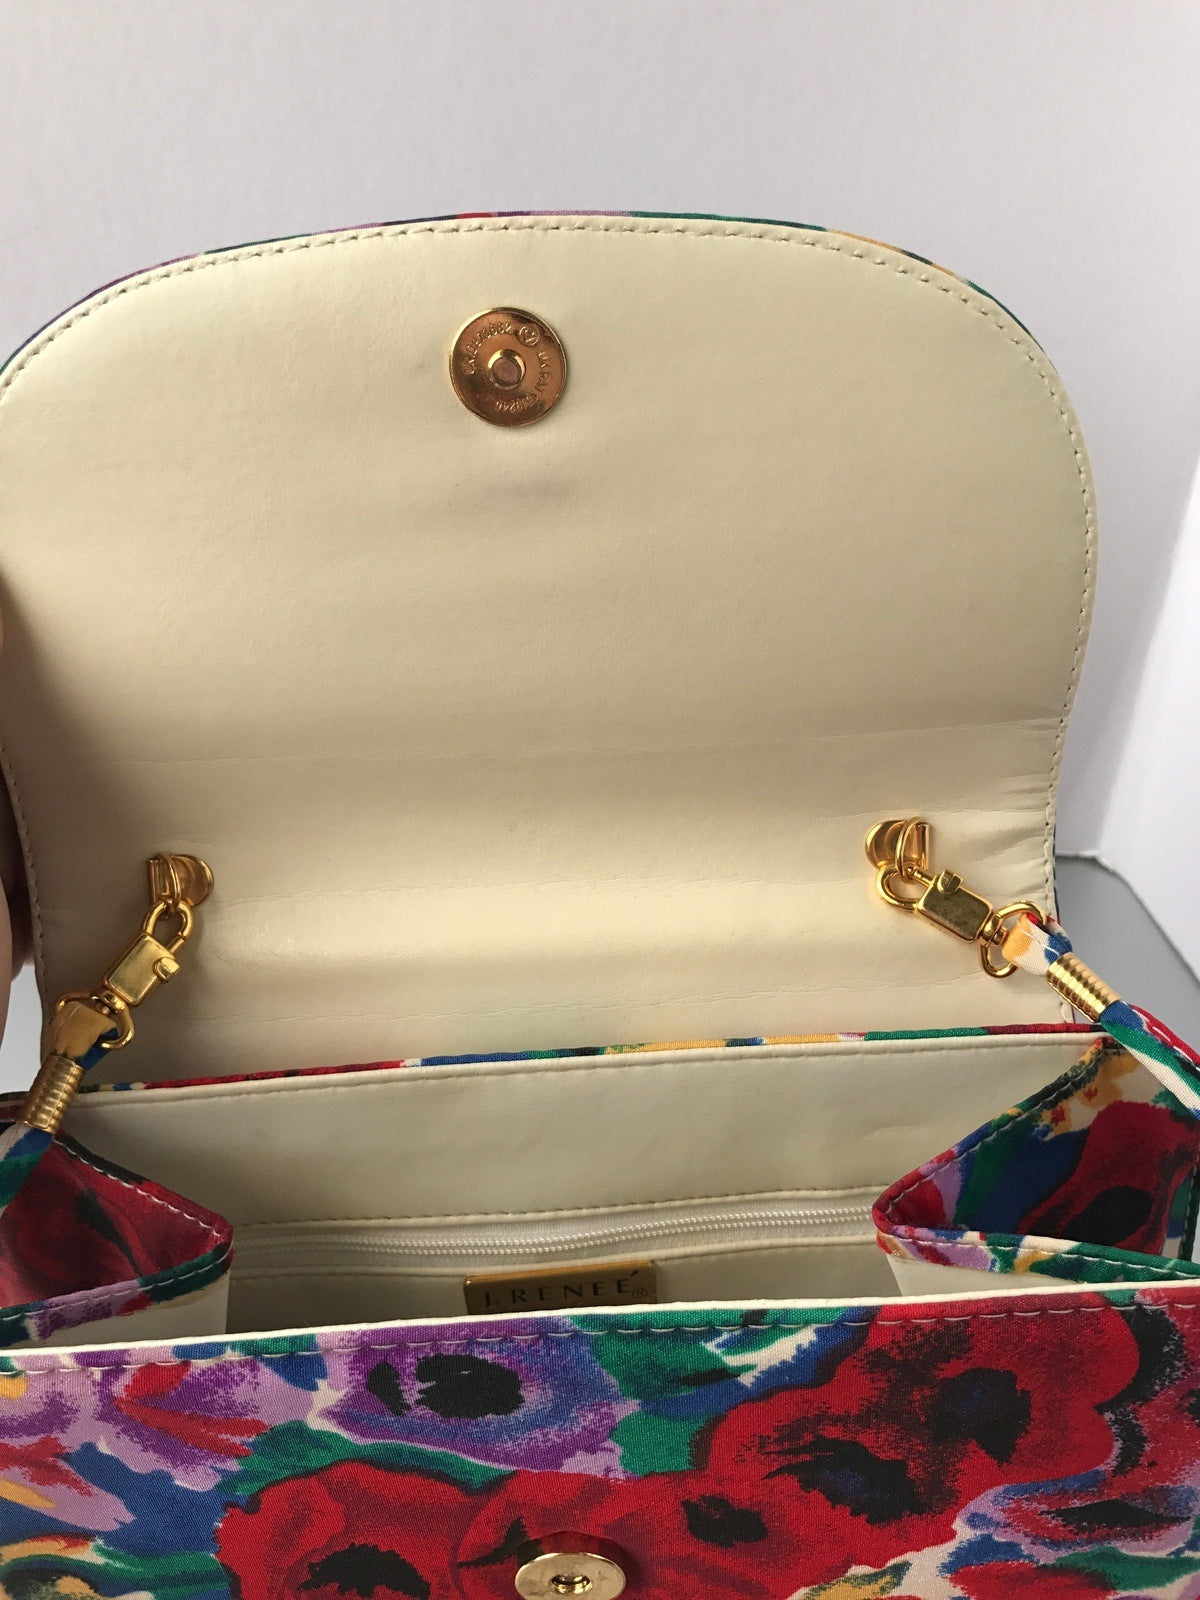 J. Reneé Purse Bag Colorful Floral Handbag Vintage Accessories